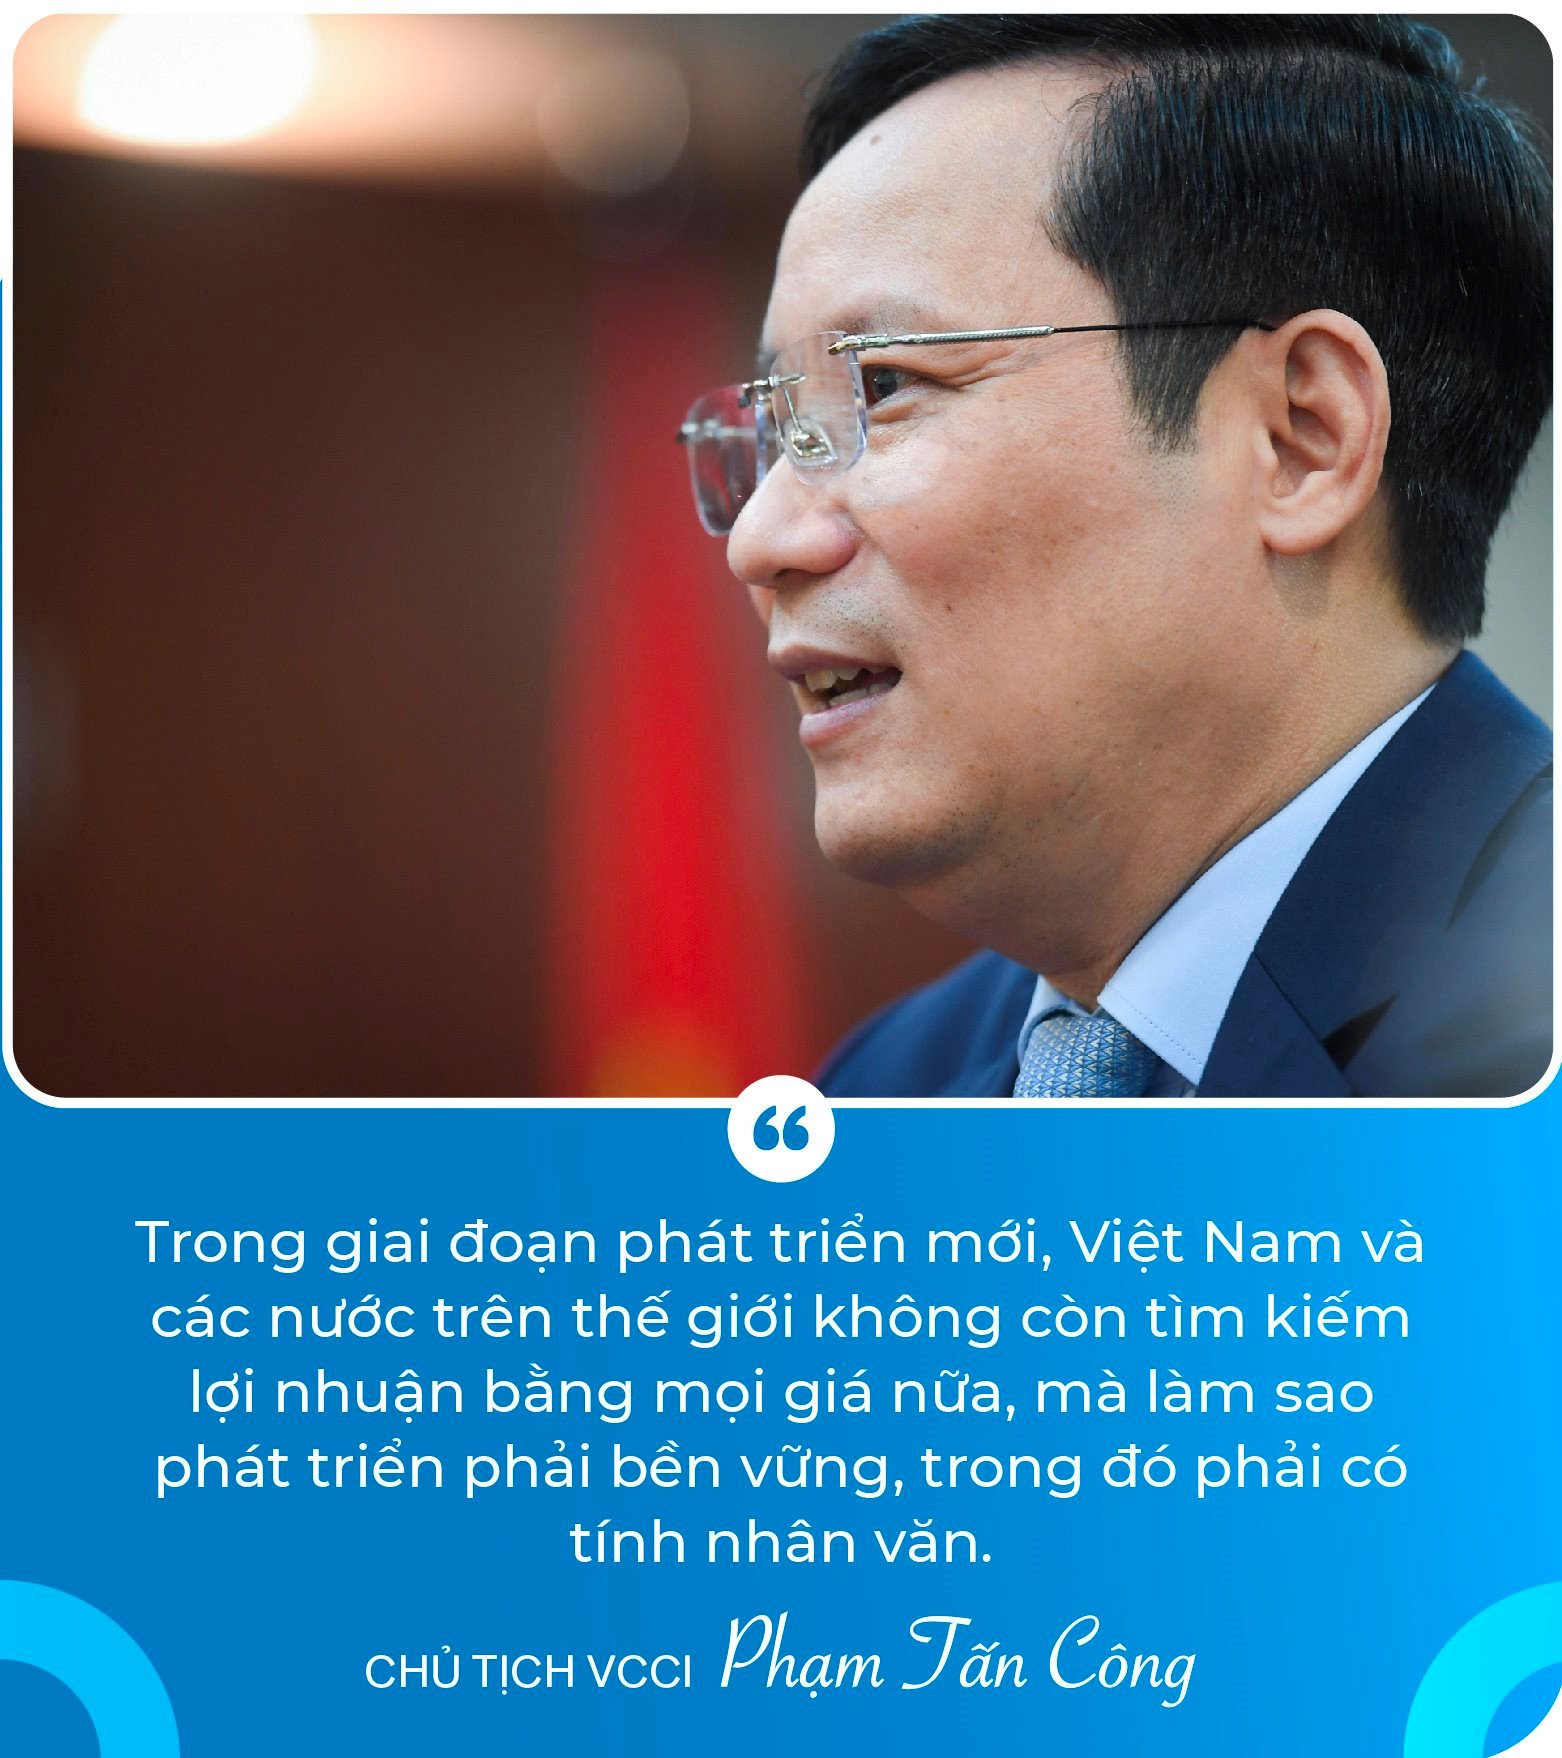 Chủ tịch VCCI Phạm Tấn Công: Không có đạo đức doanh nhân và văn hóa kinh doanh, doanh nghiệp sẽ sụp đổ thôi!- Ảnh 2.